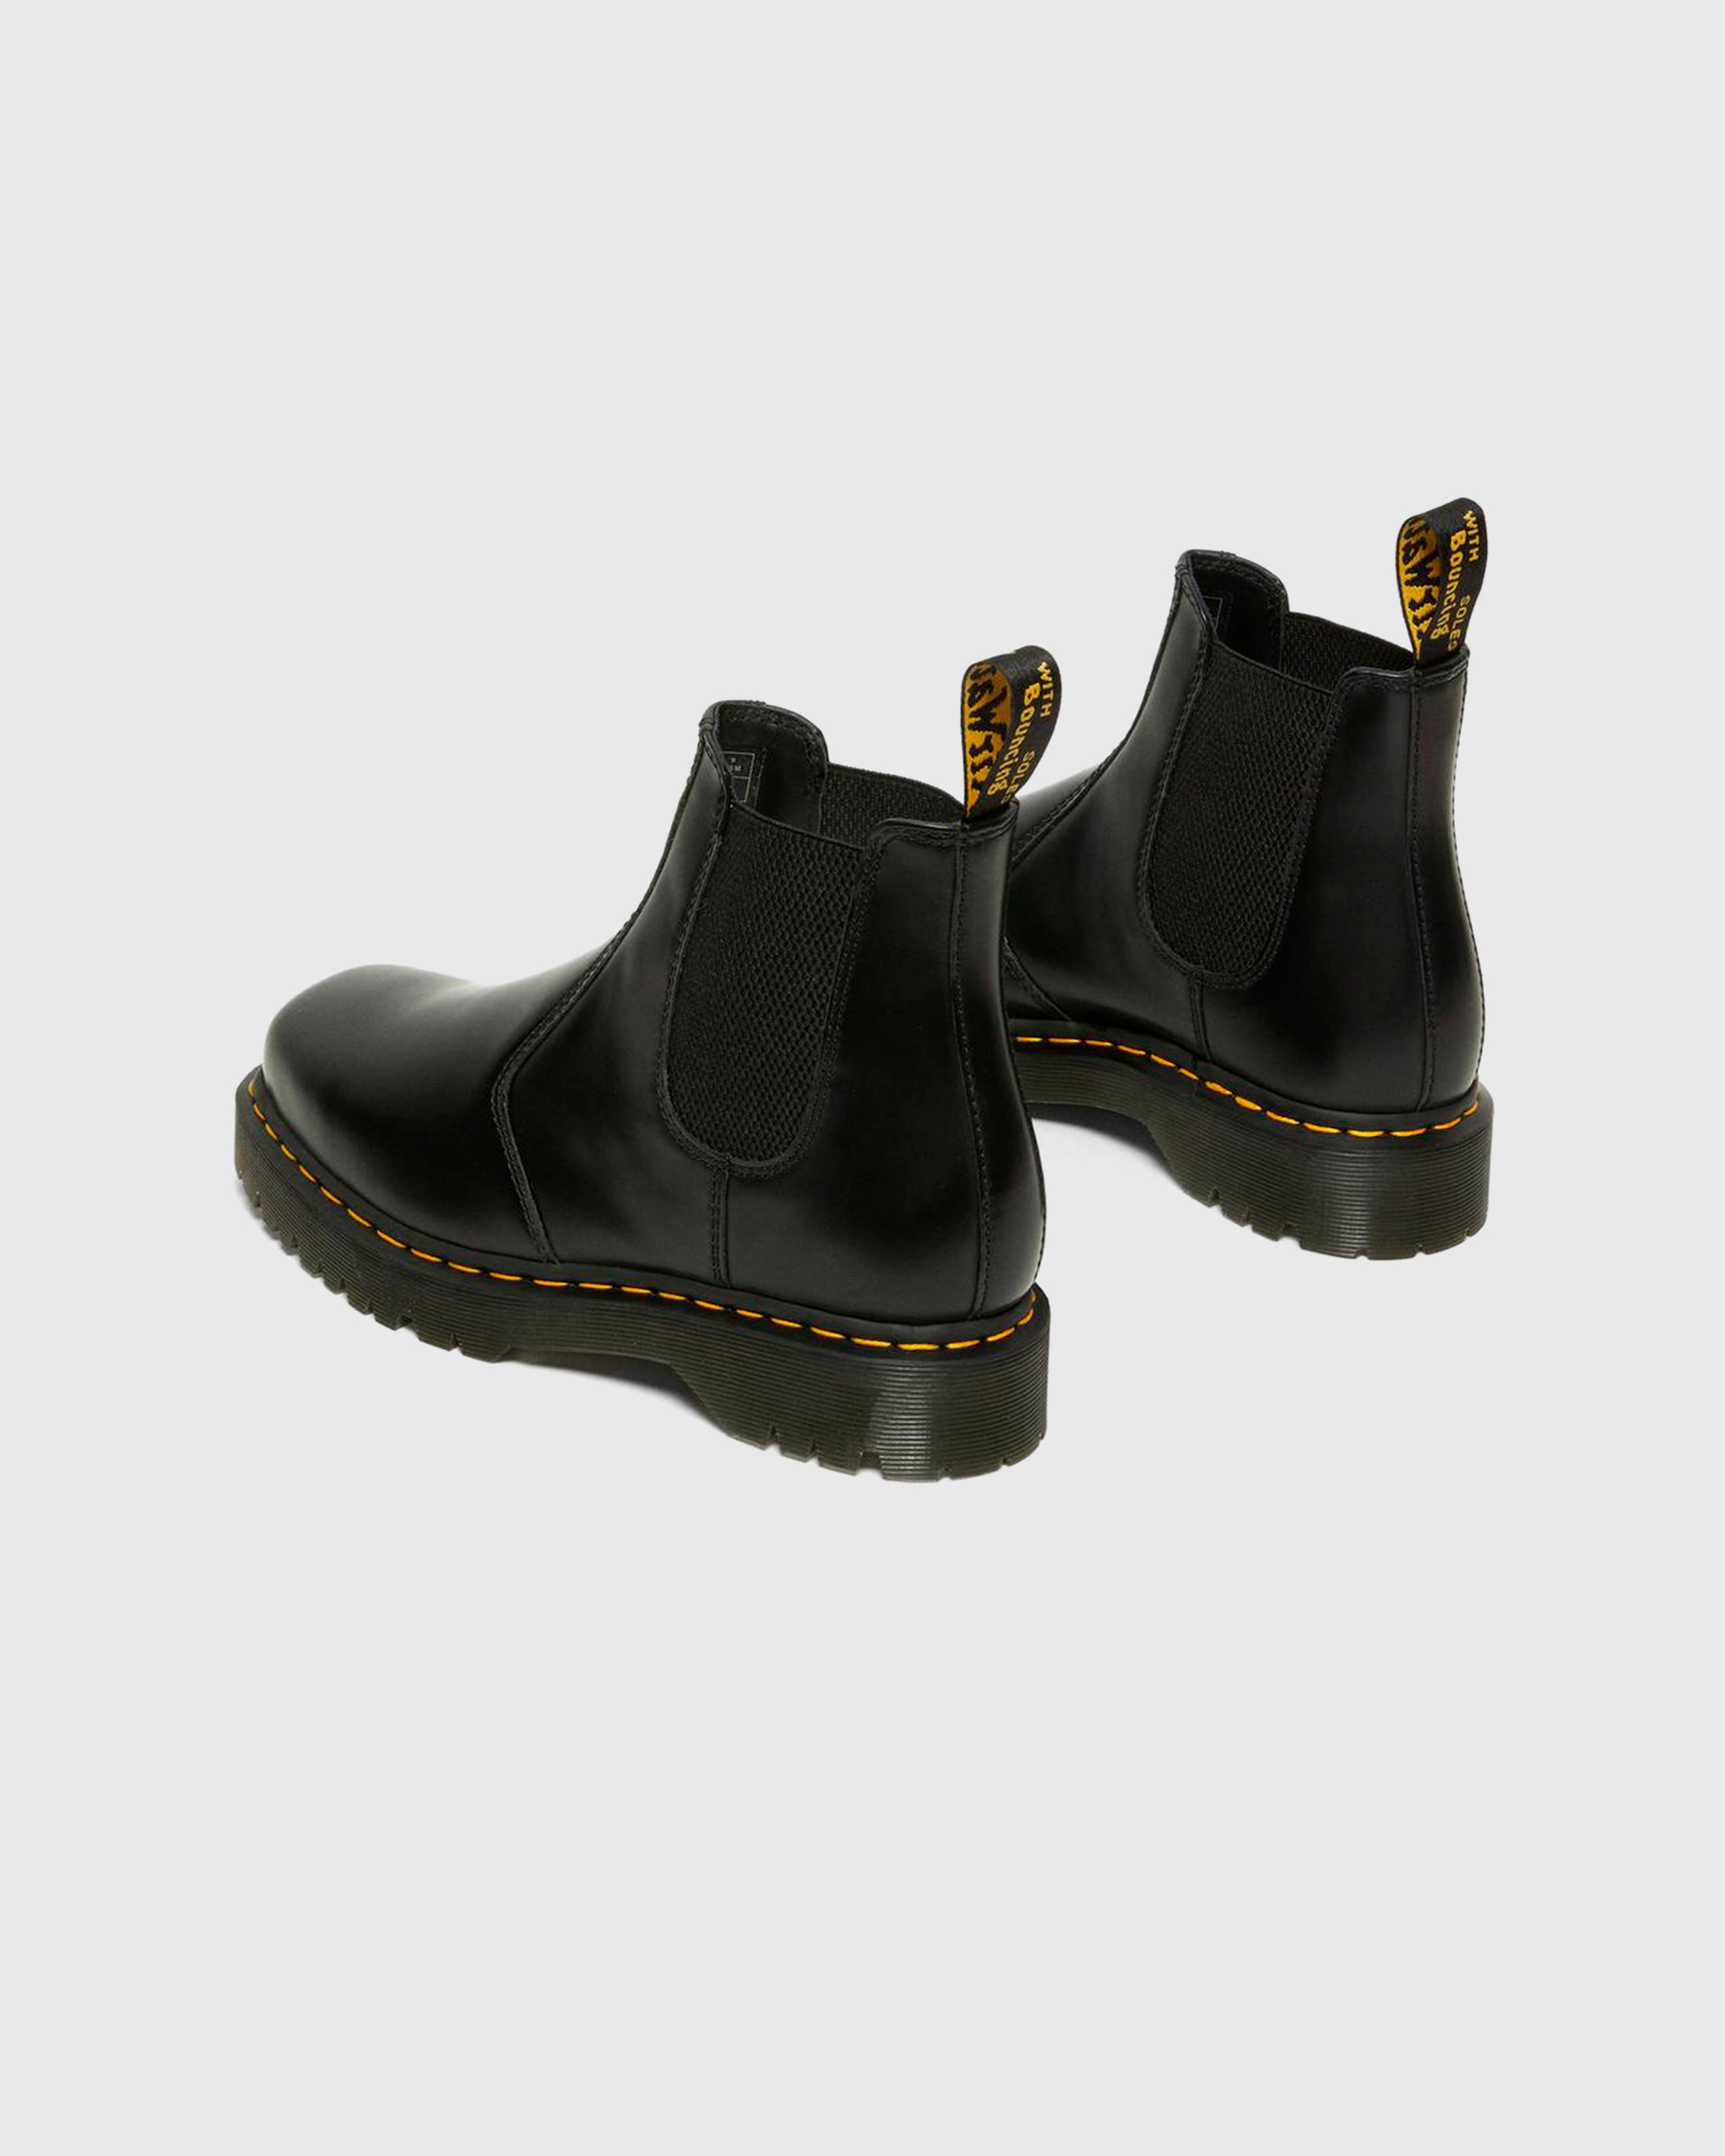 Dr. Martens - 2976 Bex Squared Black Polished Smooth - Footwear - Black - Image 4